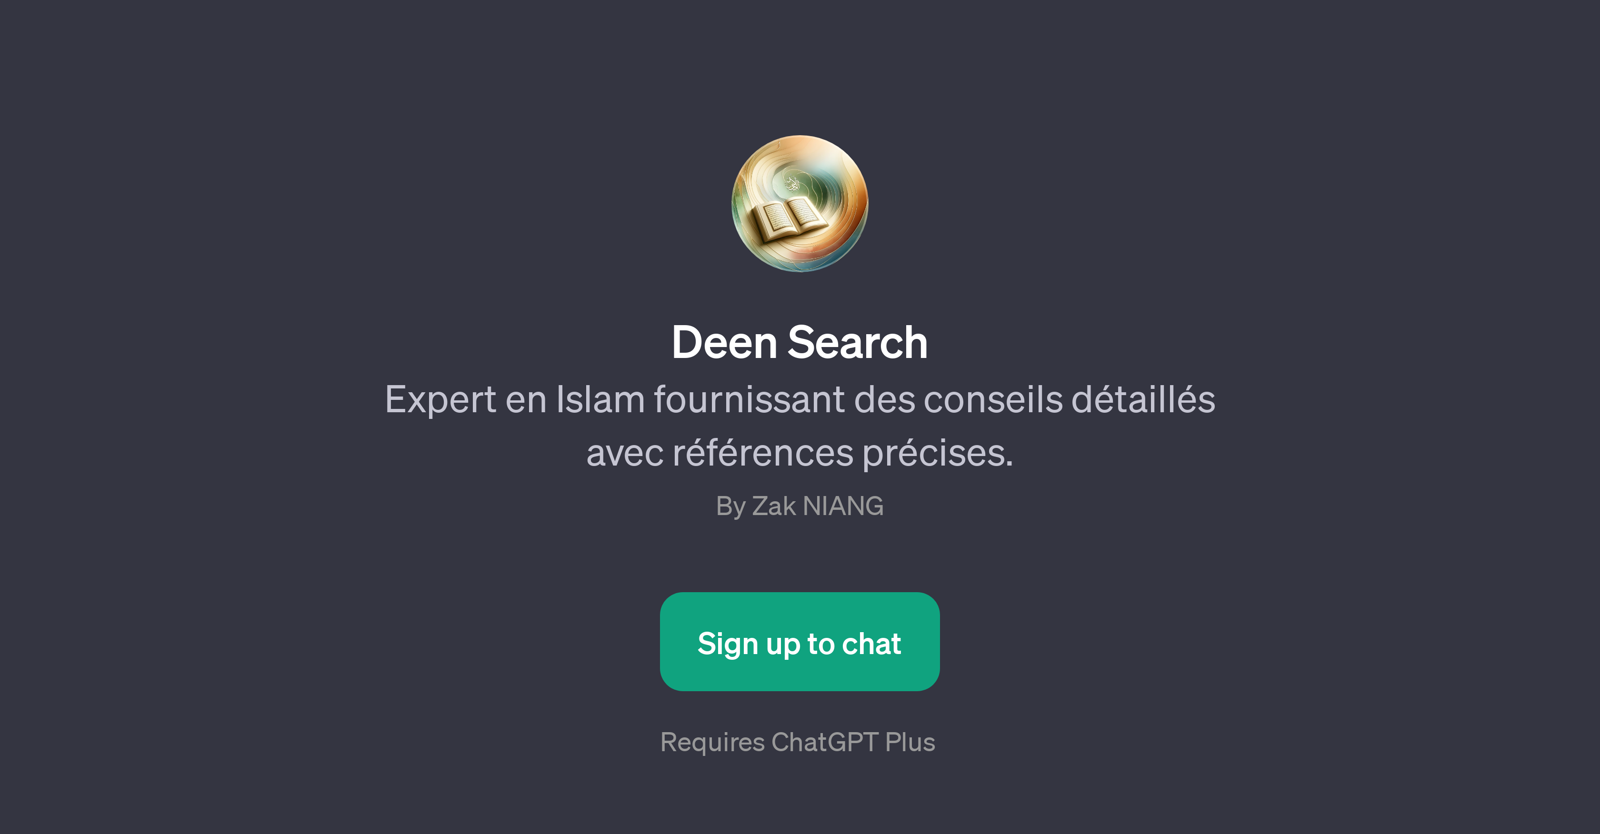 Deen Search website